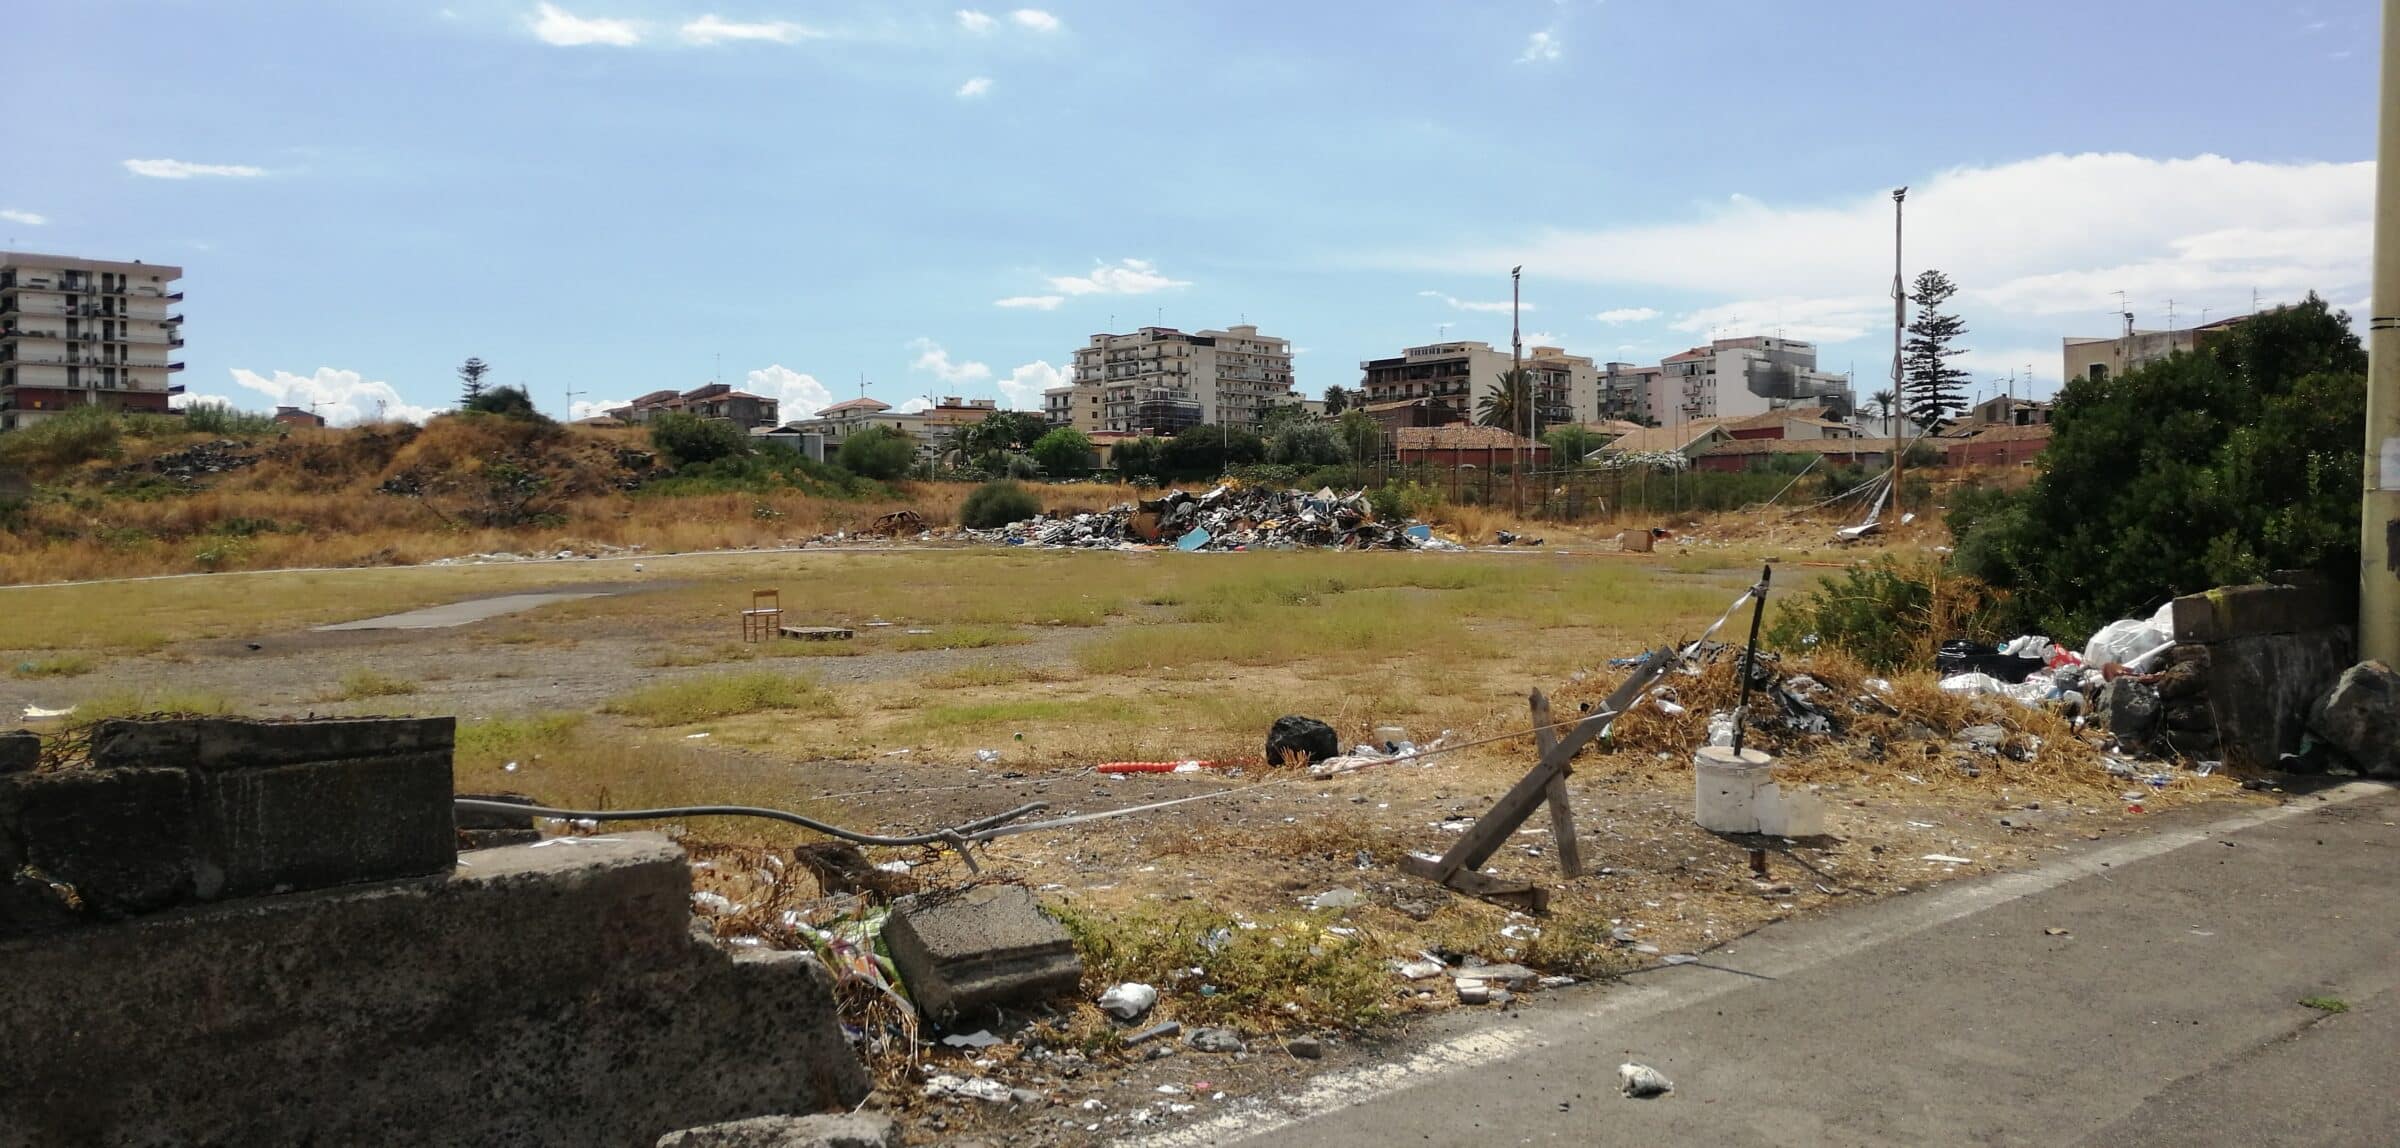 Terreno via Anfuso a Catania abbandonato, il consigliere Cardello chiede di mettere in sicurezza la zona